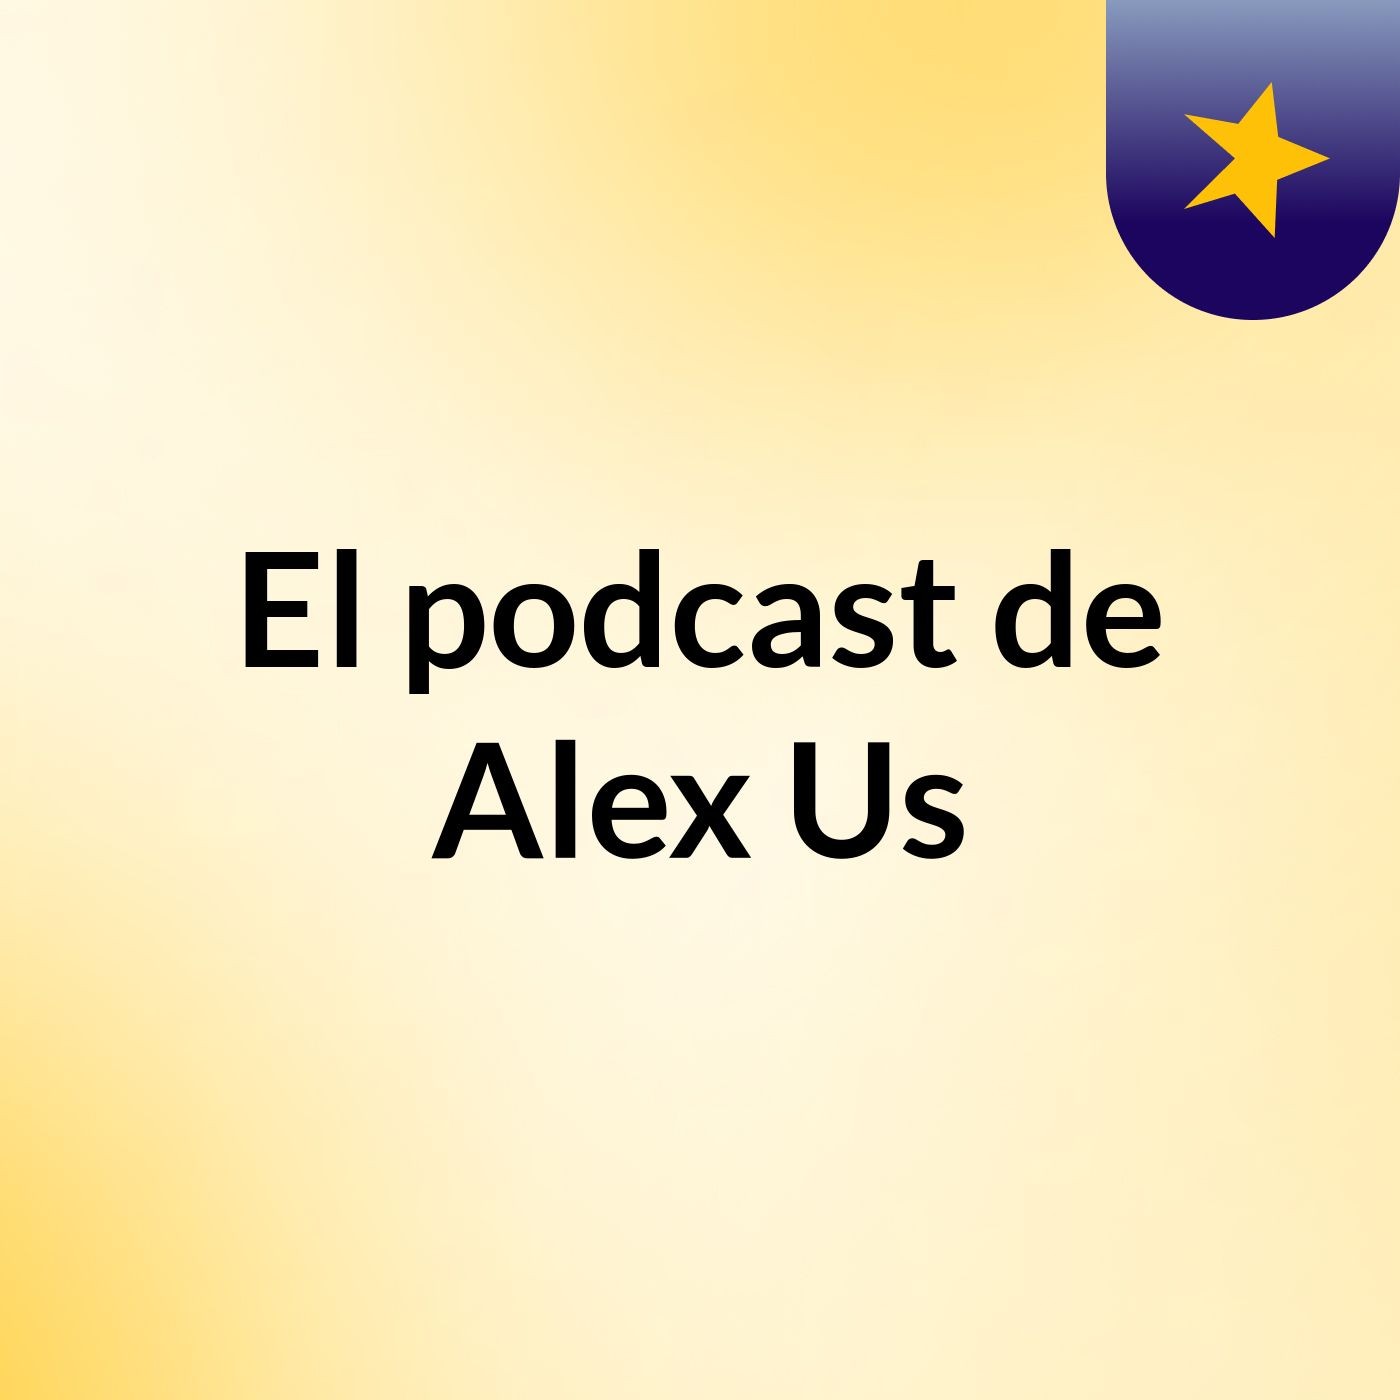 El podcast de Alex Us